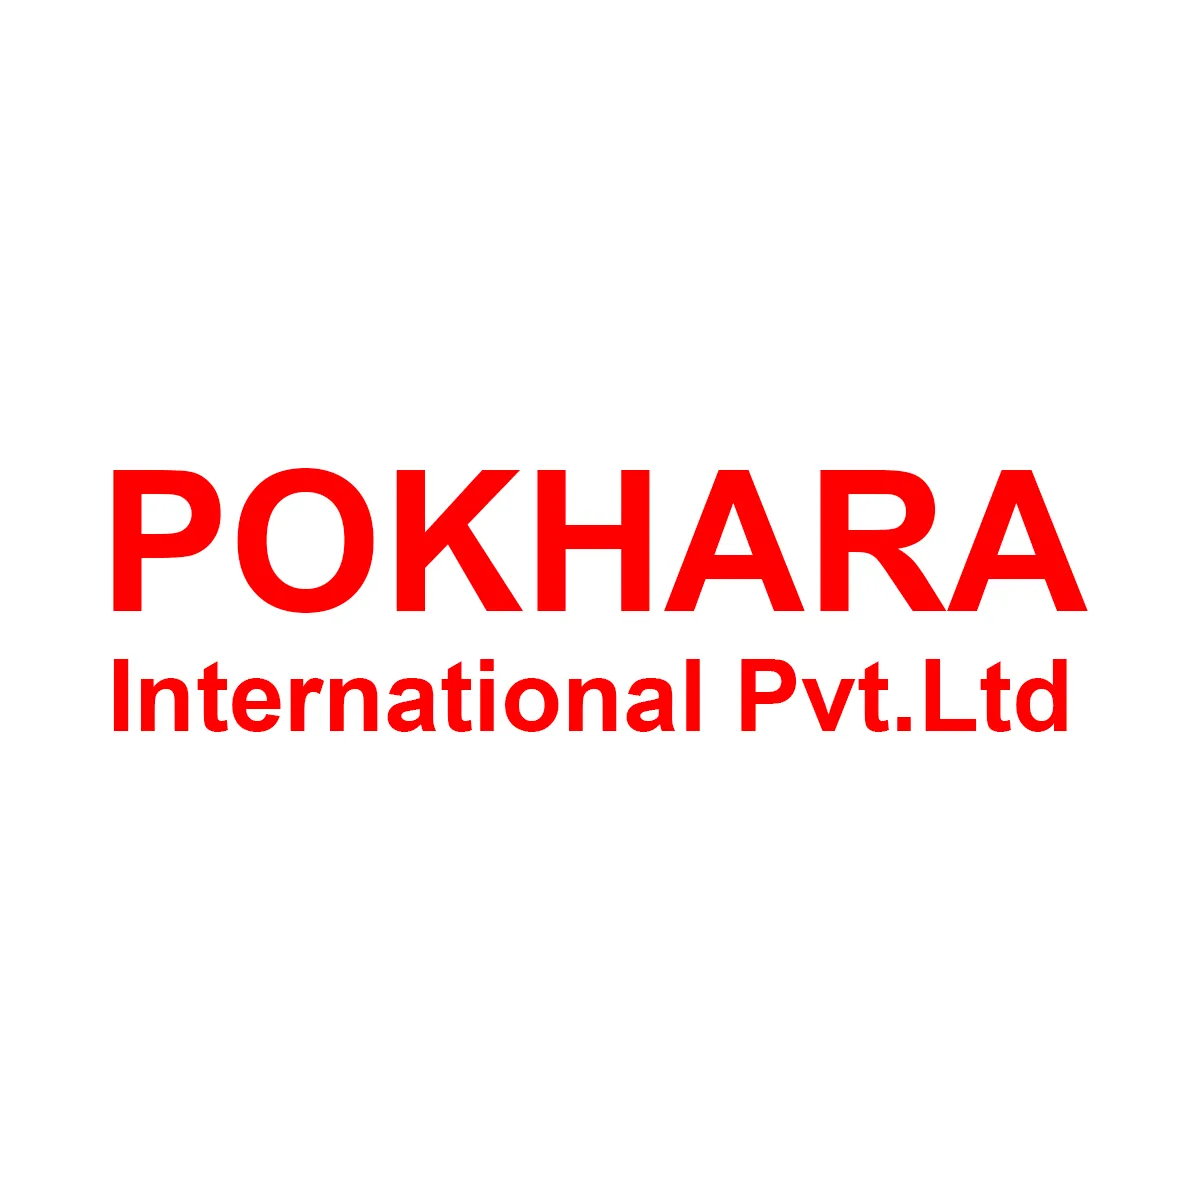 Pokhara International Pvt.Ltd